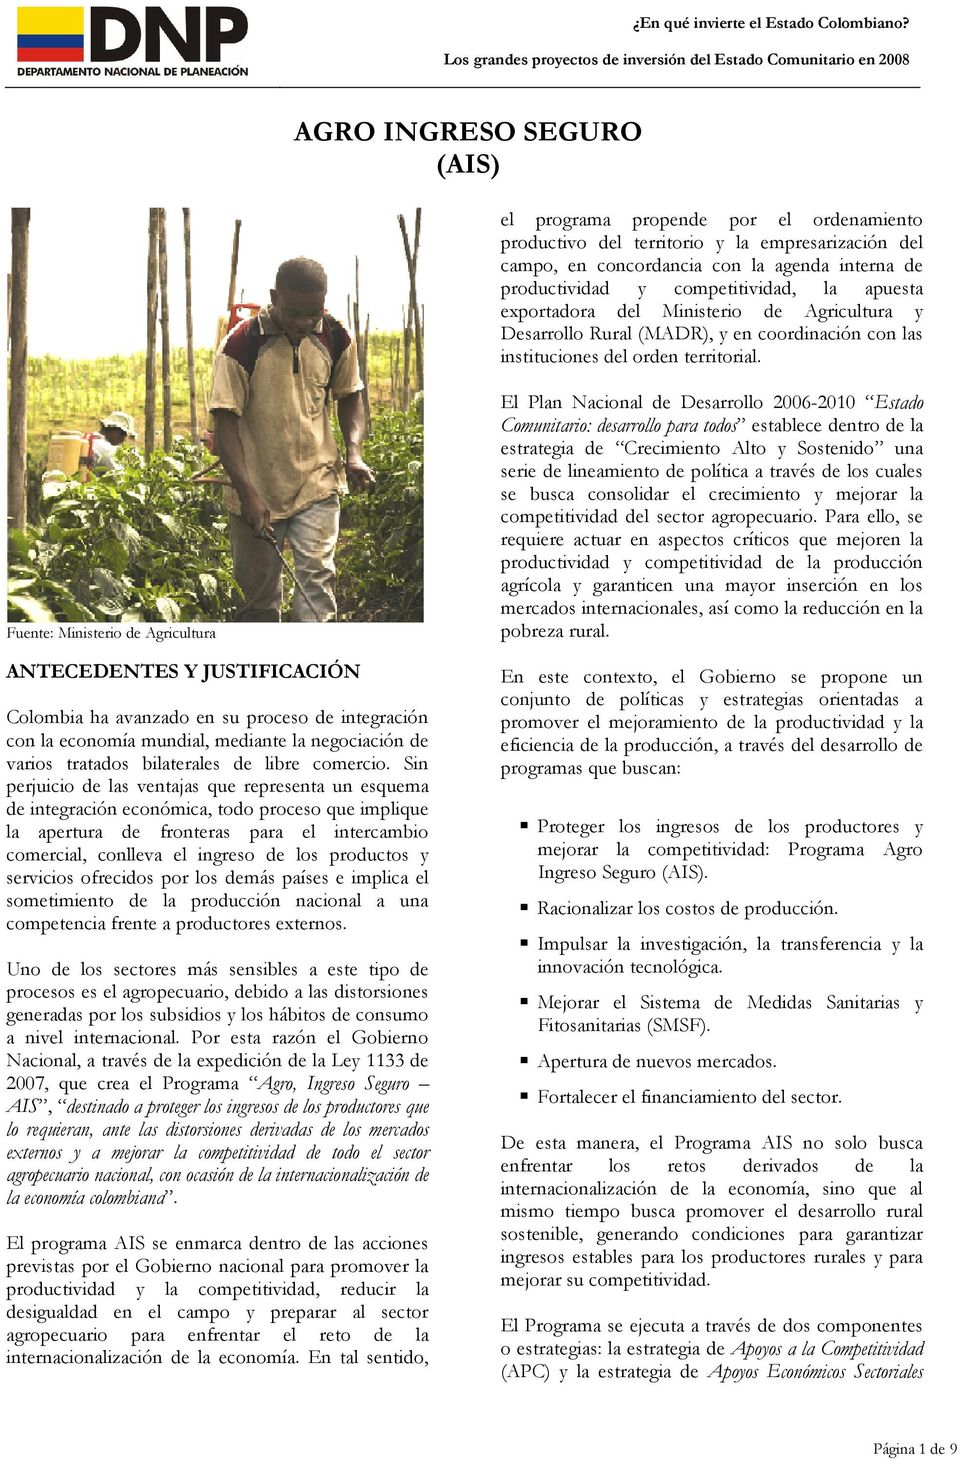 Fuente: Ministerio de Agricultura ANTECEDENTES Y JUSTIFICACIÓN Colombia ha avanzado en su proceso de integración con la economía mundial, mediante la negociación de varios tratados bilaterales de